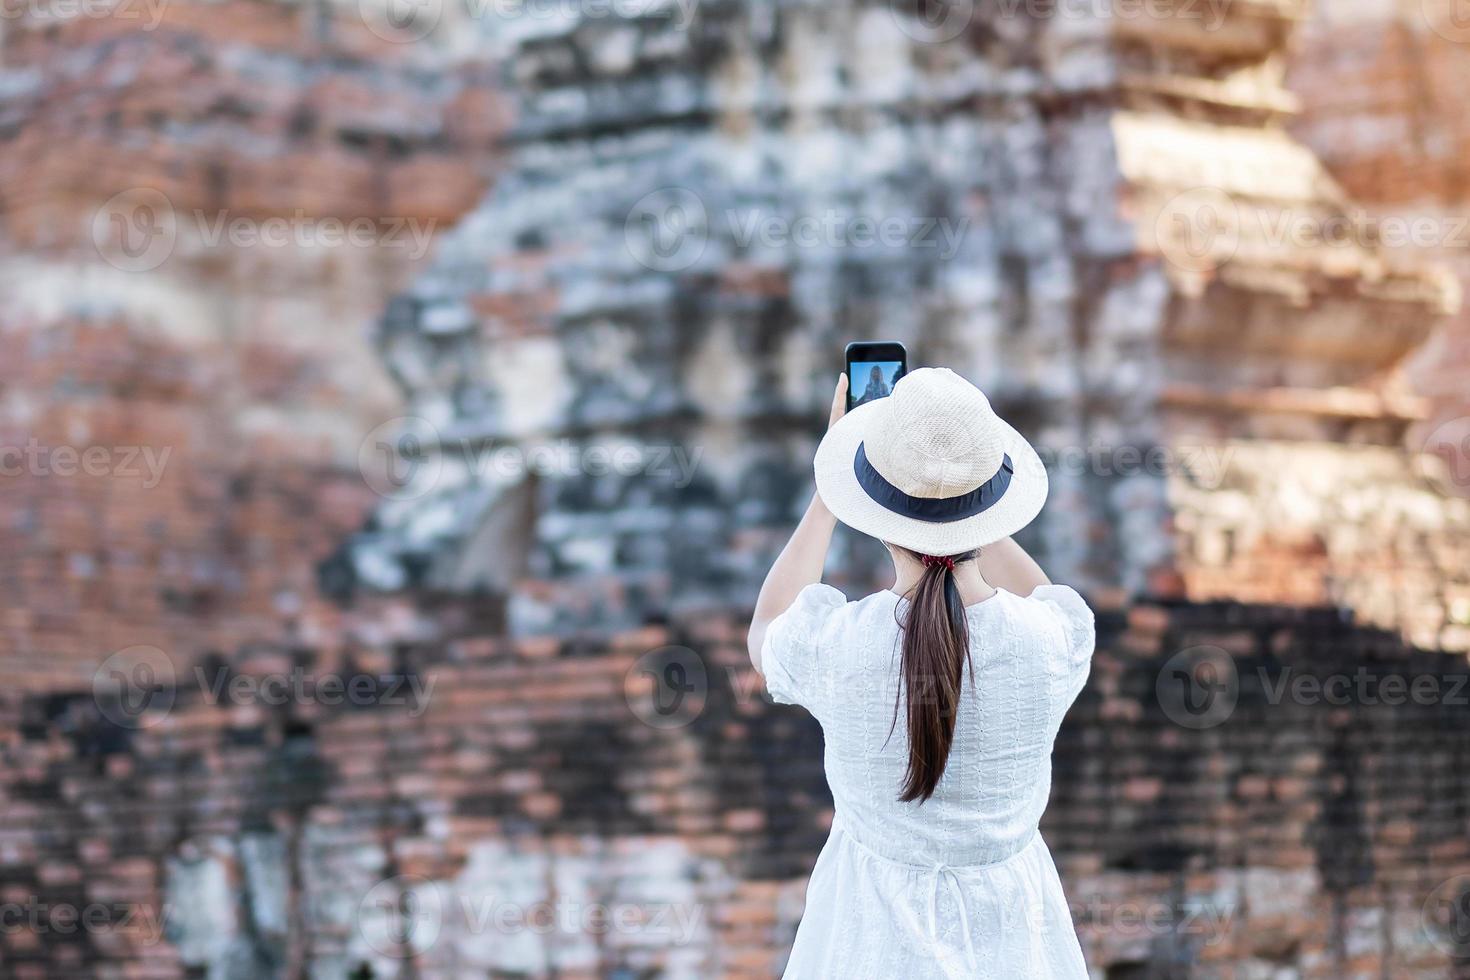 donna turistica felice in abito bianco che scatta foto con lo smartphone mobile, durante la visita al tempio di wat chaiwatthanaram nel parco storico di ayutthaya, estate, concetto di viaggio da solo, in asia e in thailandia